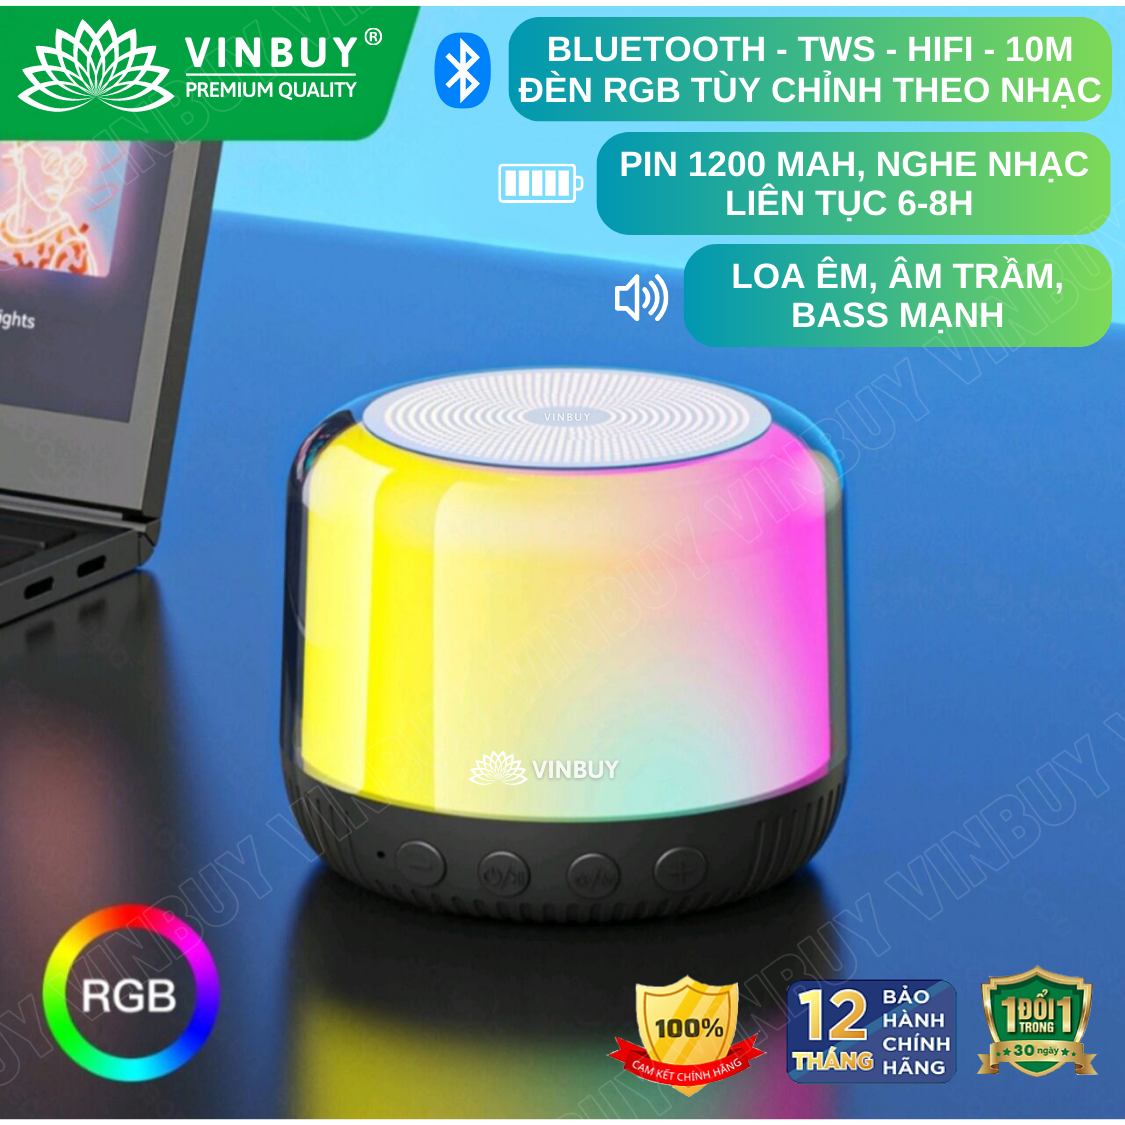 Loa bluetooth nghe nhạc mini không dây wireless TWS HiFi loa âm trầm bass mạnh có đèn RGB đổi màu theo nhạc hỗ trợ thẻ nhớ - Hàng chính hãng VinBuy